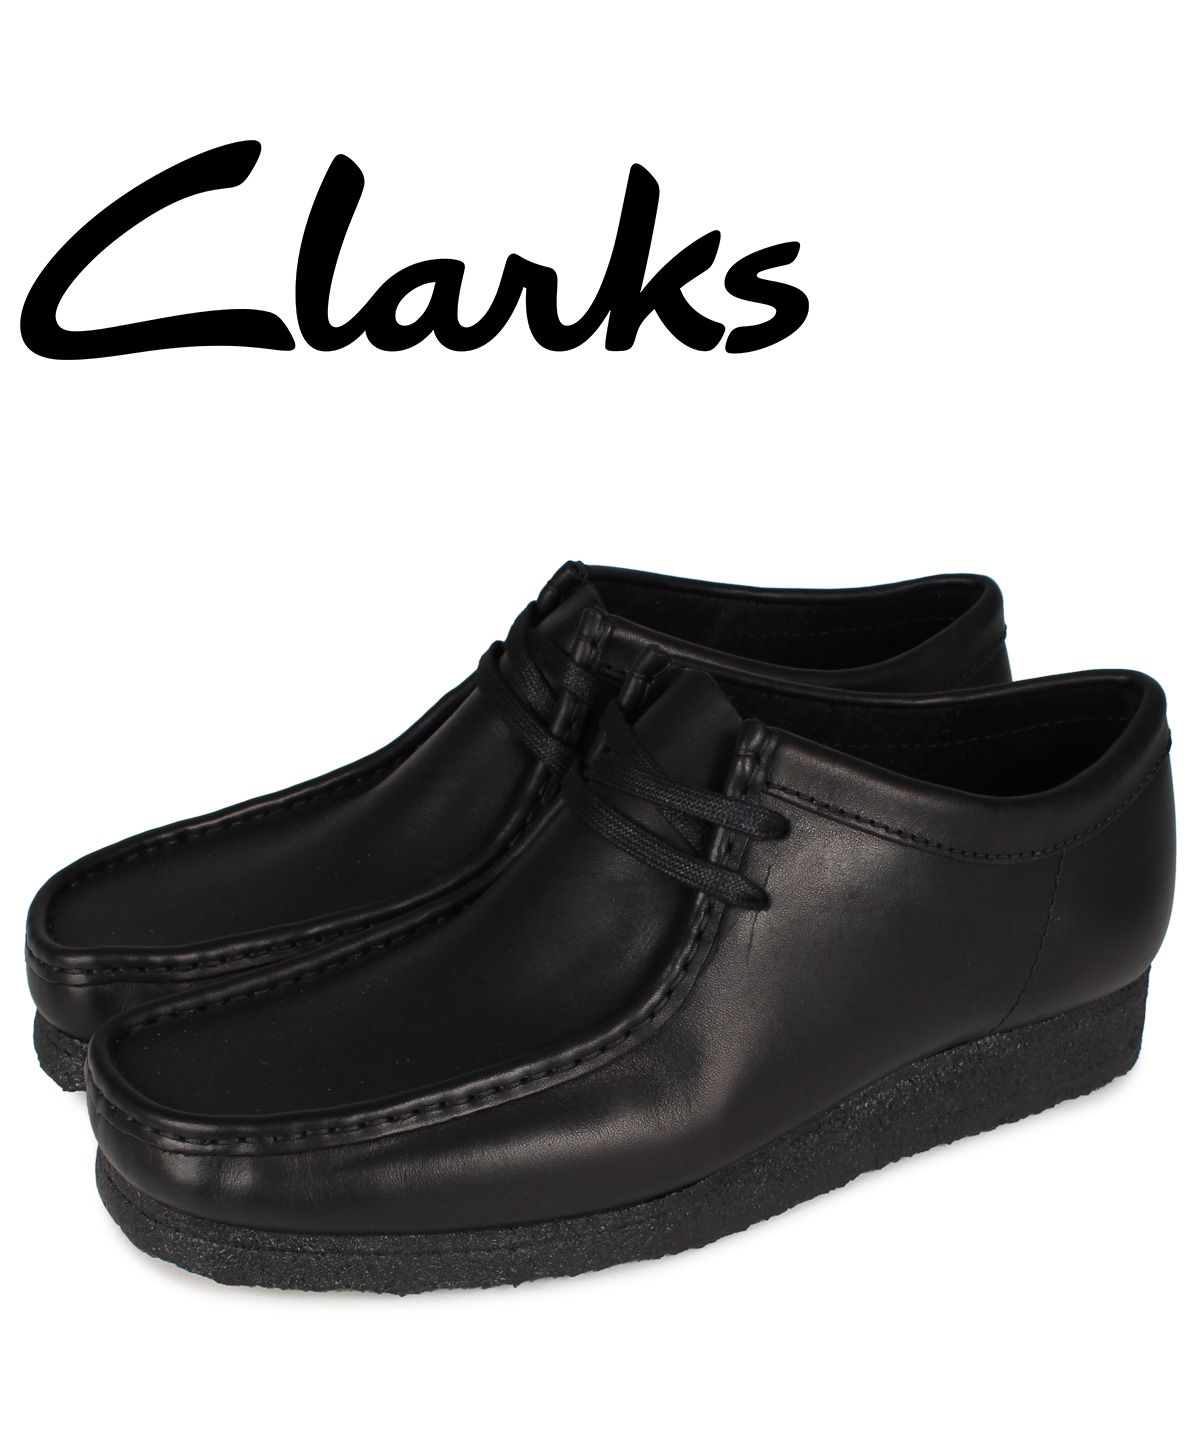 クラークス CLARKS ワラビーブーツ メンズ WALLABEE BOOT ブラック 黒 26155514